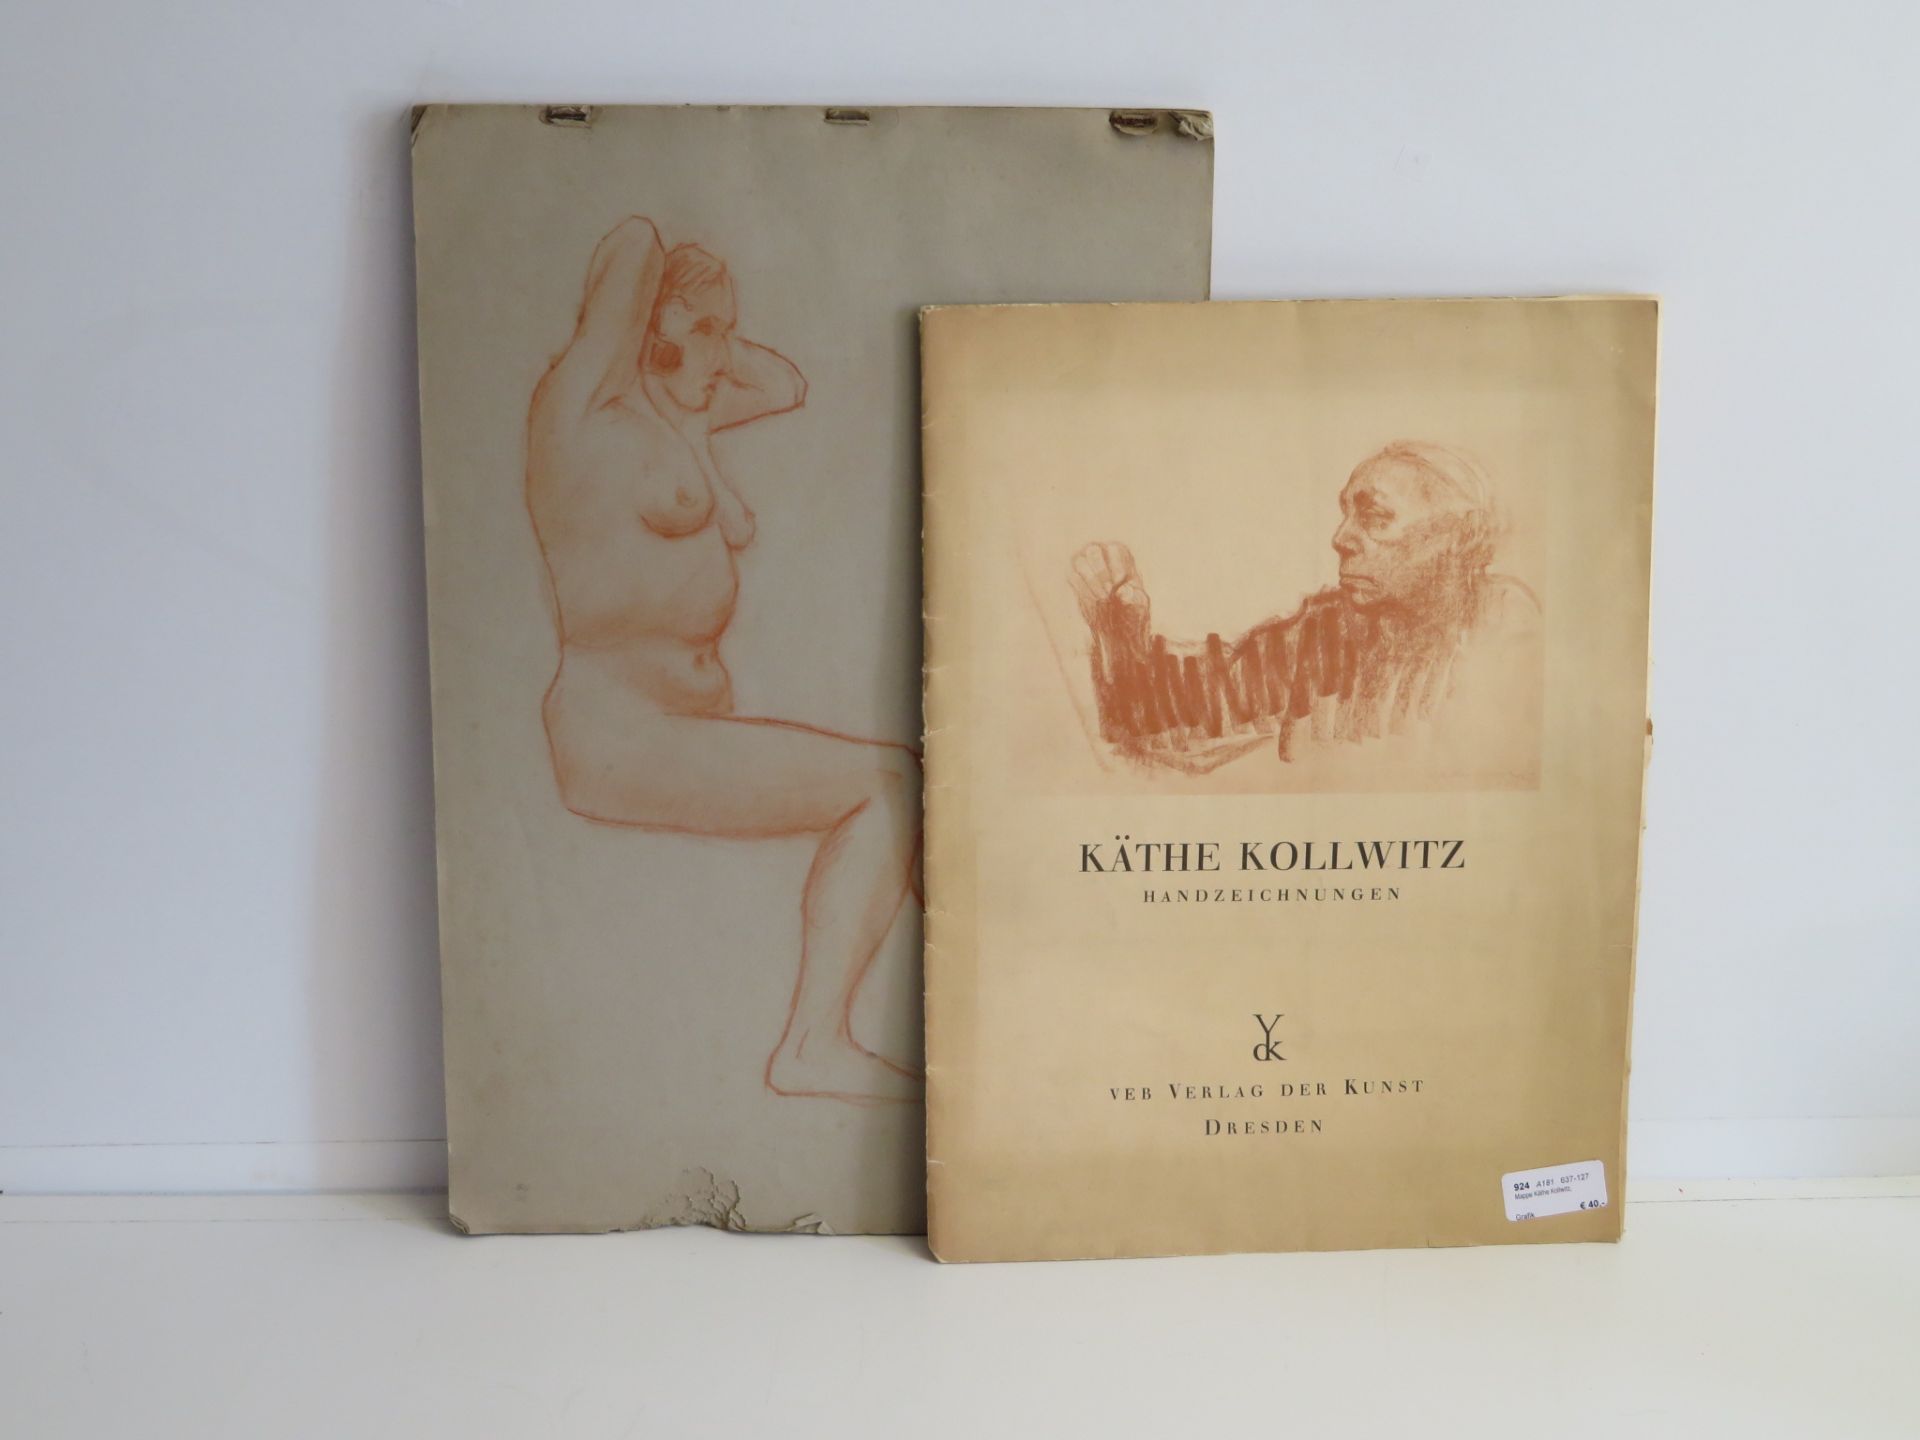 Mappe Käthe Kollwitz, Handzeichnungen sowie Studienblock mit Aktzeichnungen in Röthel, 48 x 32 cm.